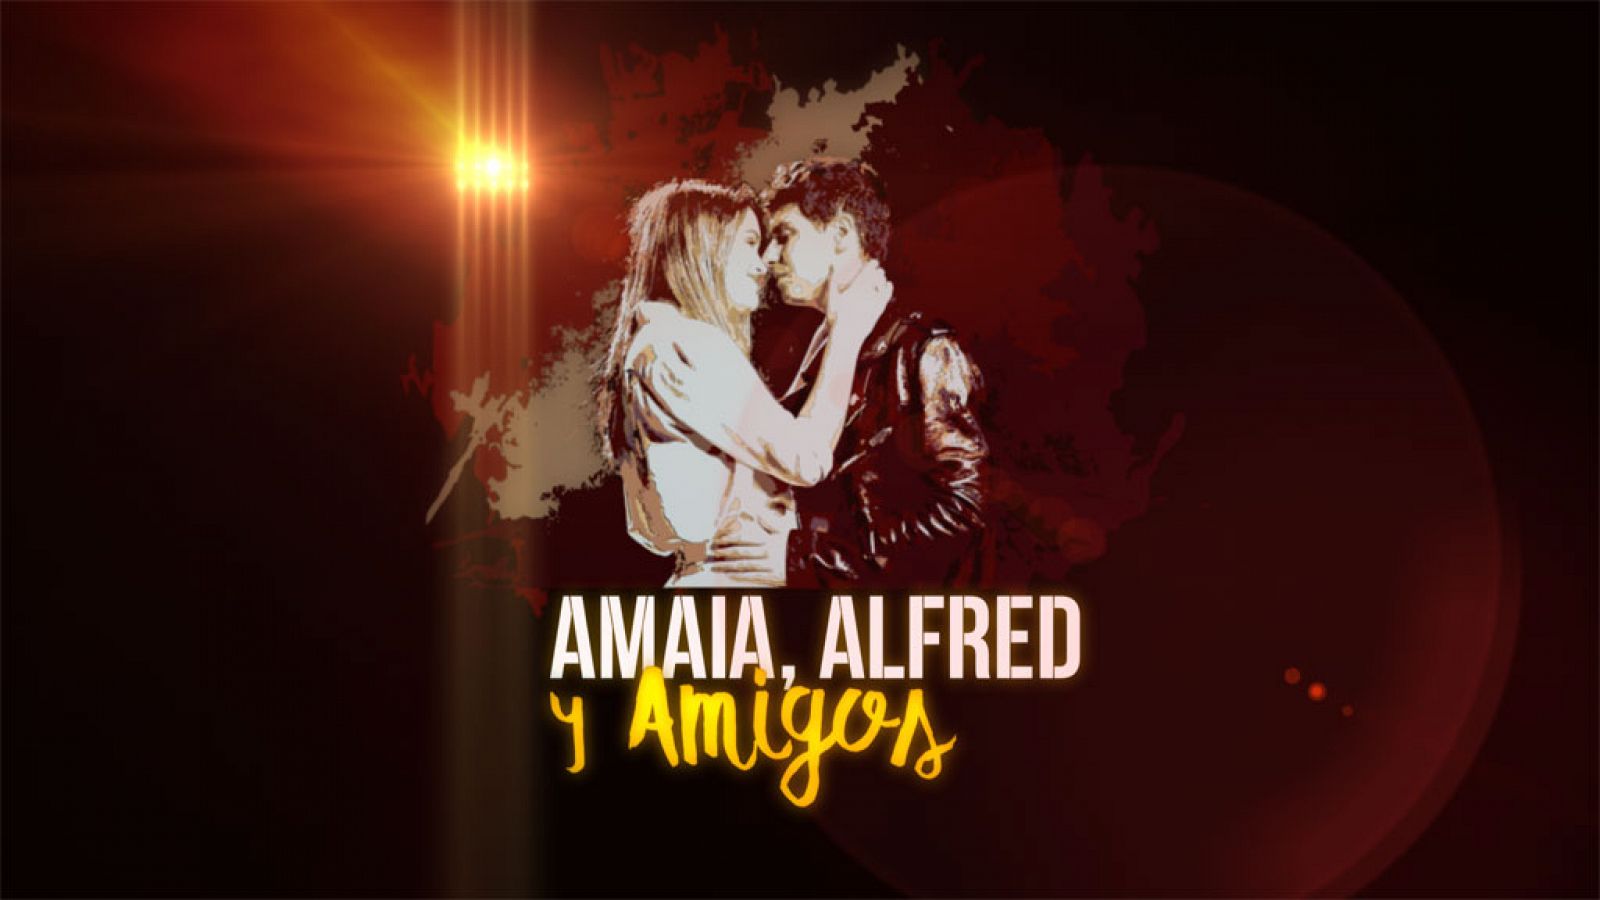 Alfred, Amaia y amigos, este jueves a las 20.30 horas en RTVE.es